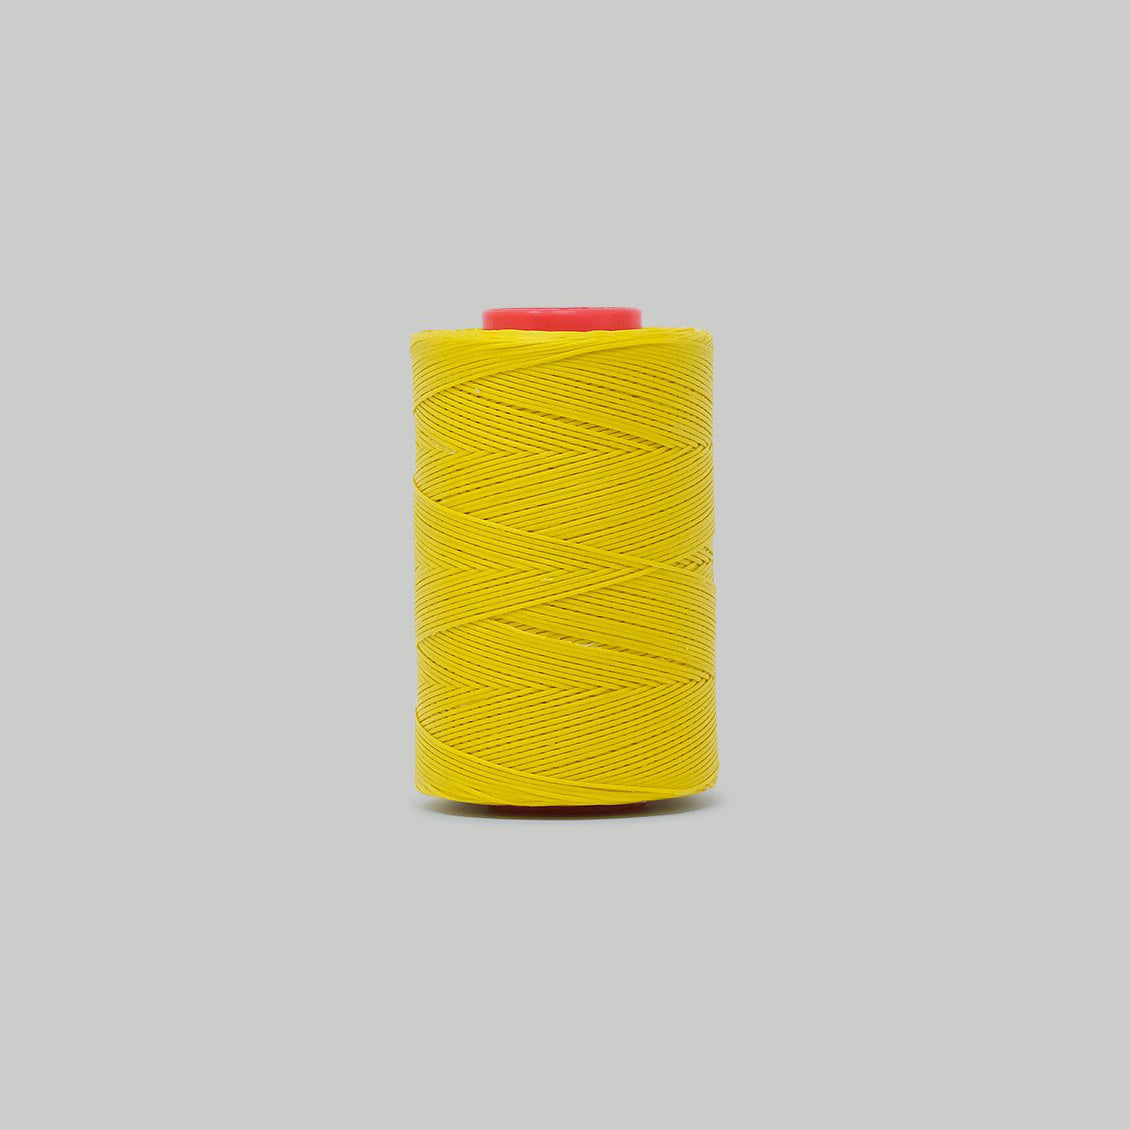 Julius Koch Ritza 25 Thread / 0.80 MM / 21 colours